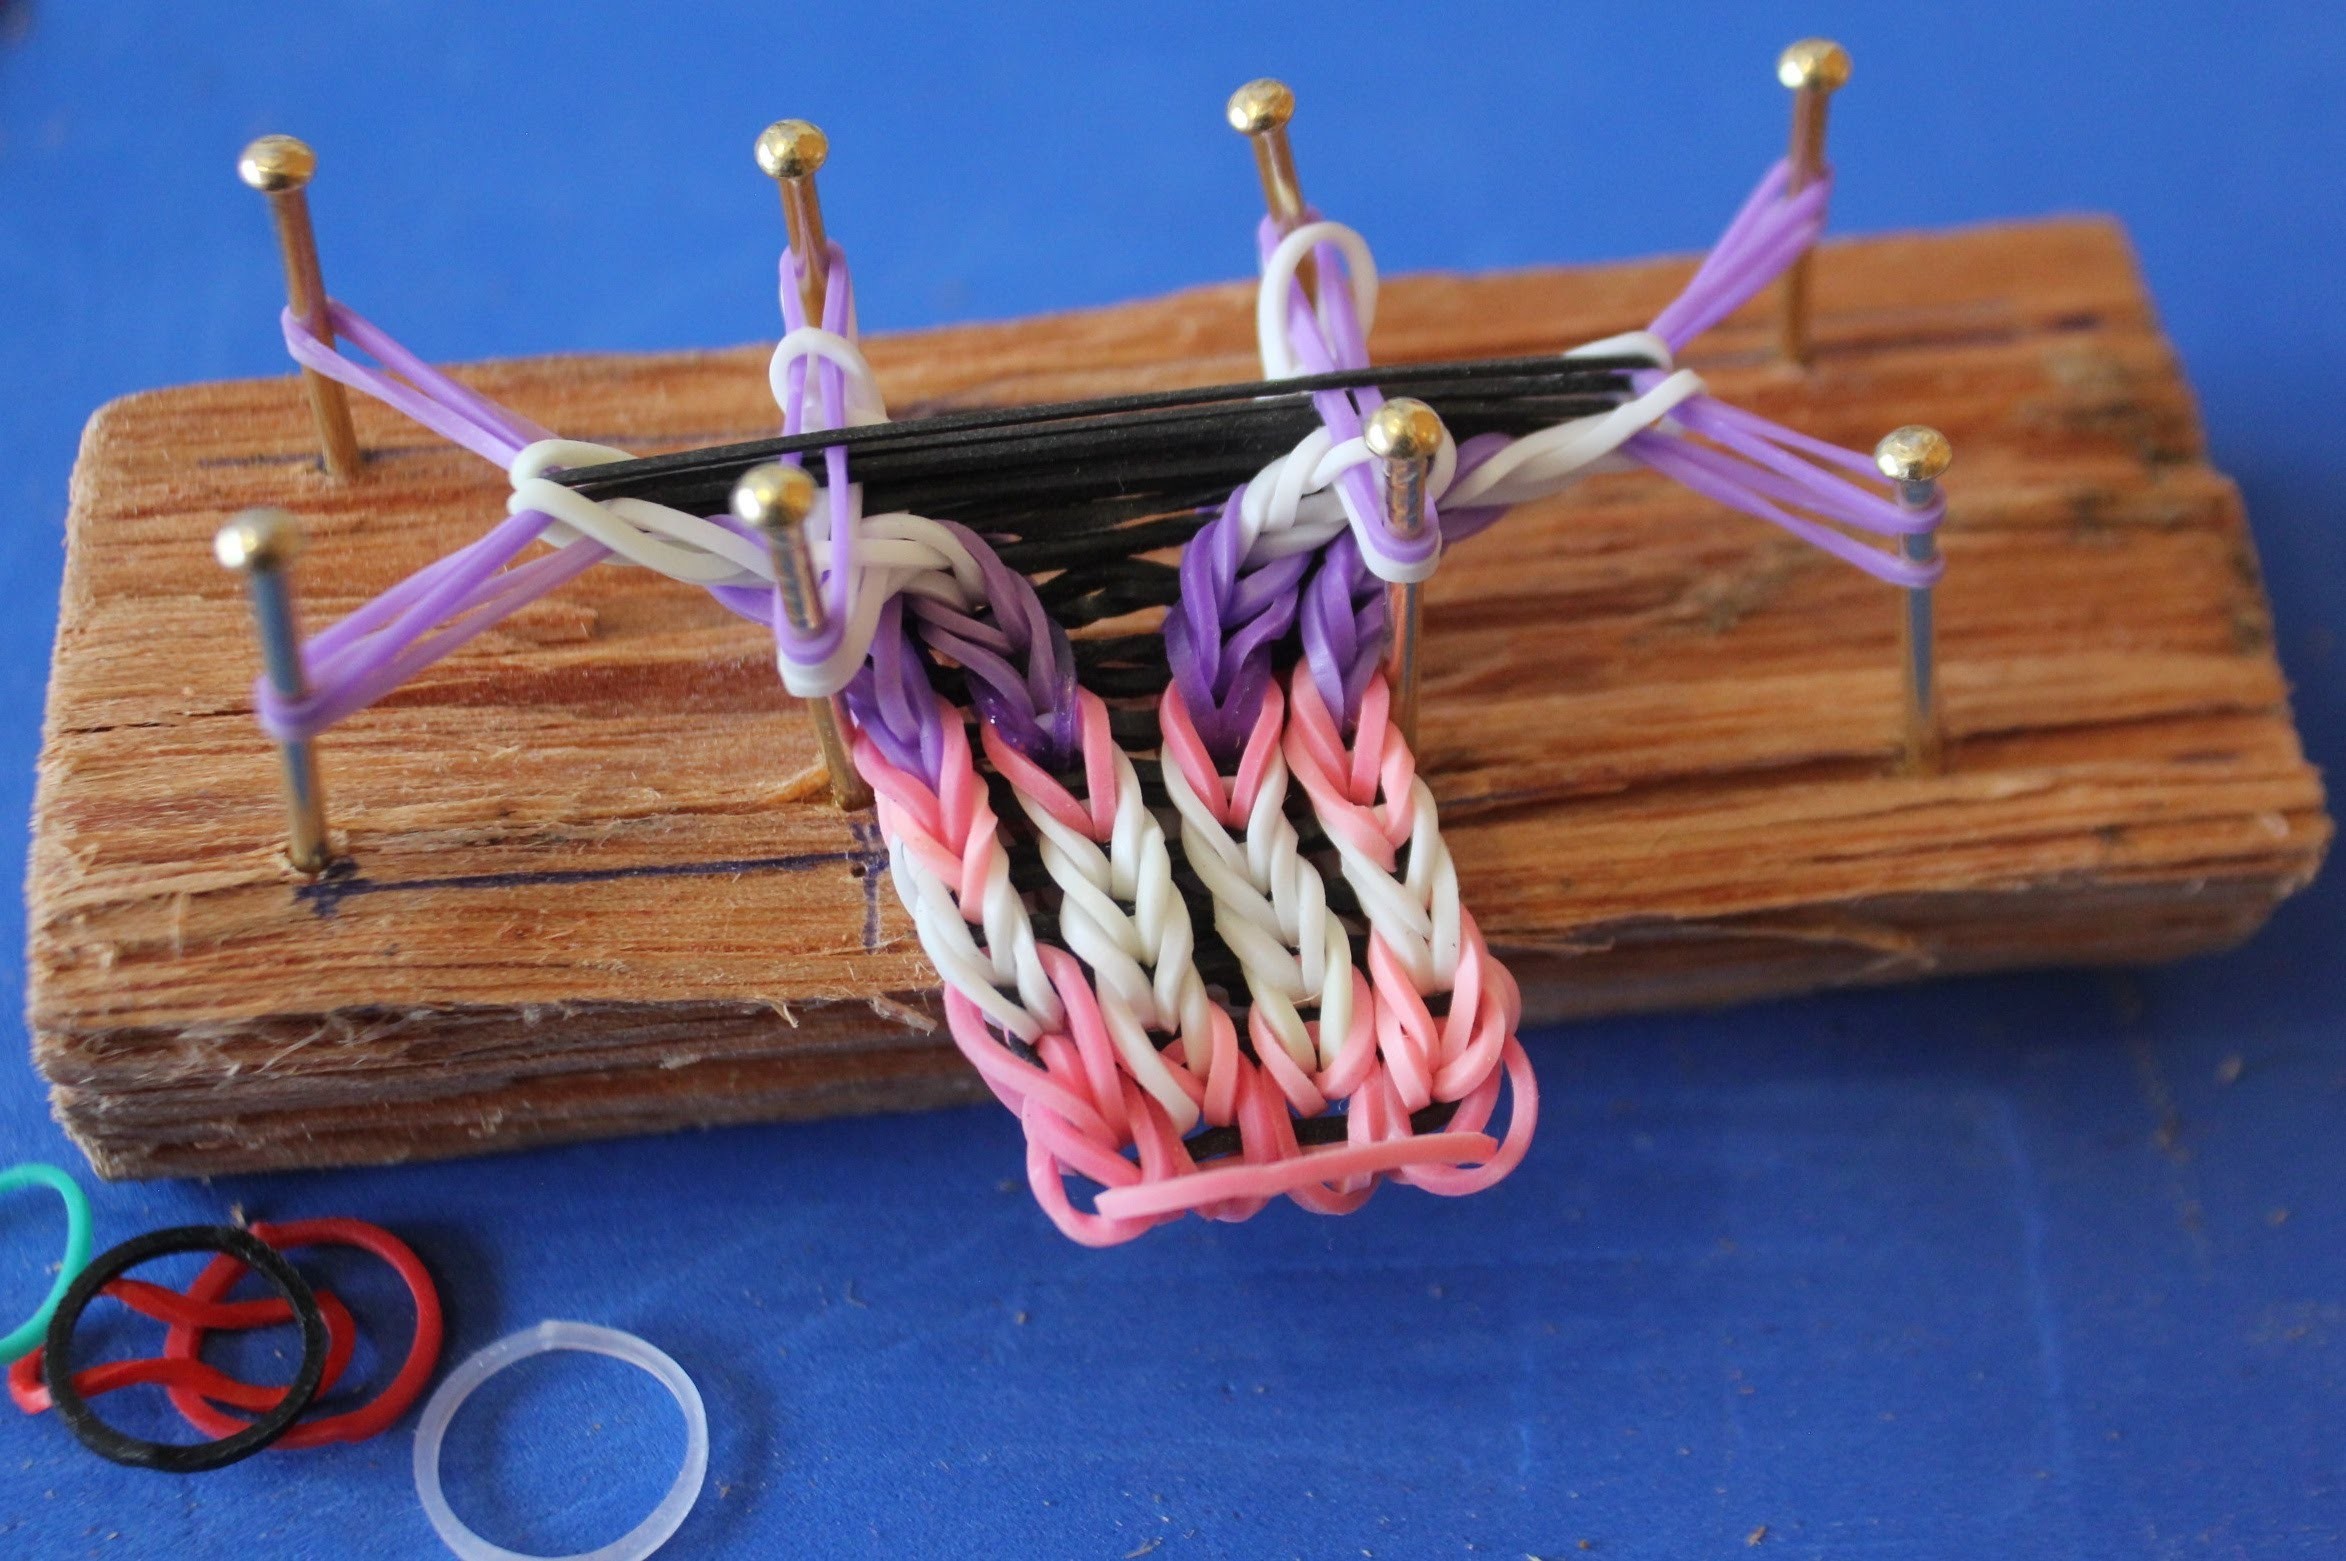 Telar para pulsera de ligas o gomitas. How to make a bracelet loom